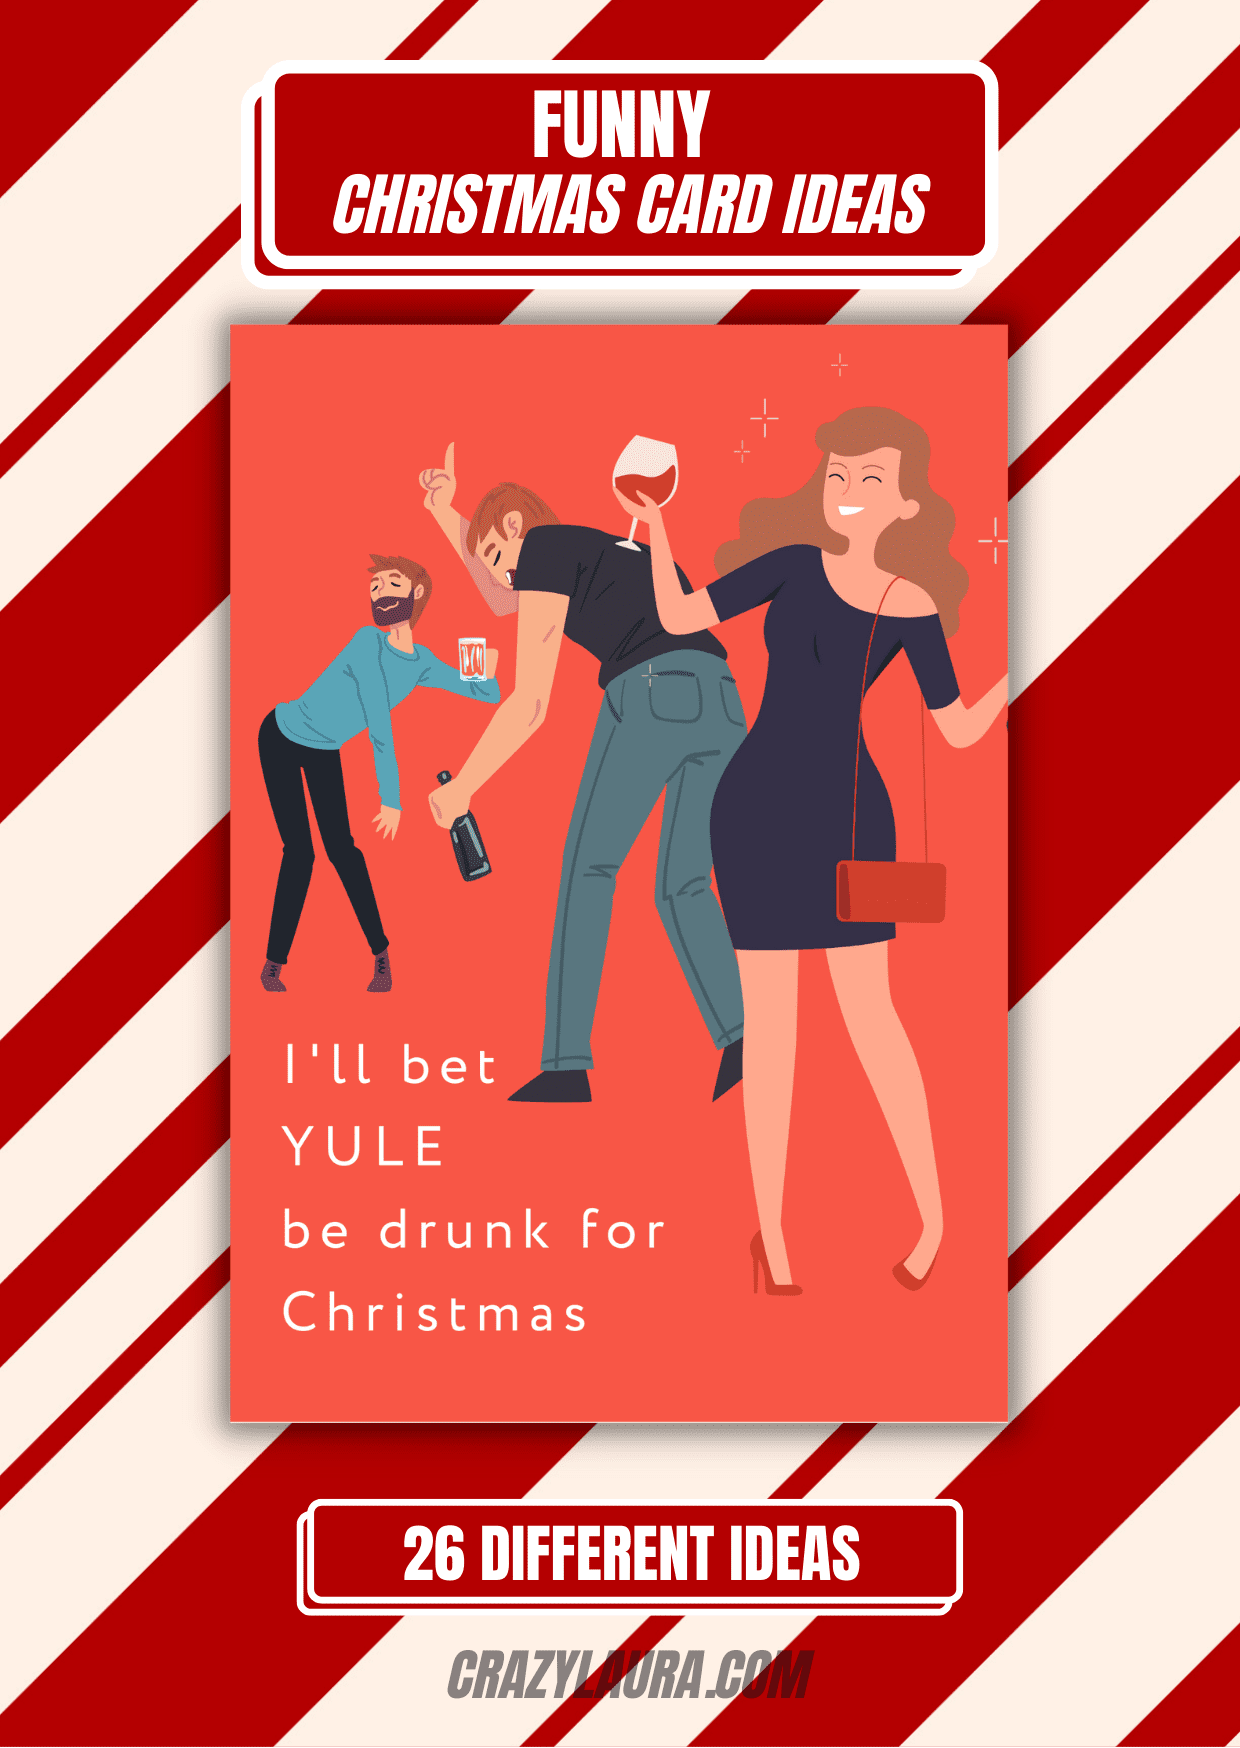 26 Funny Christmas Card Ideas